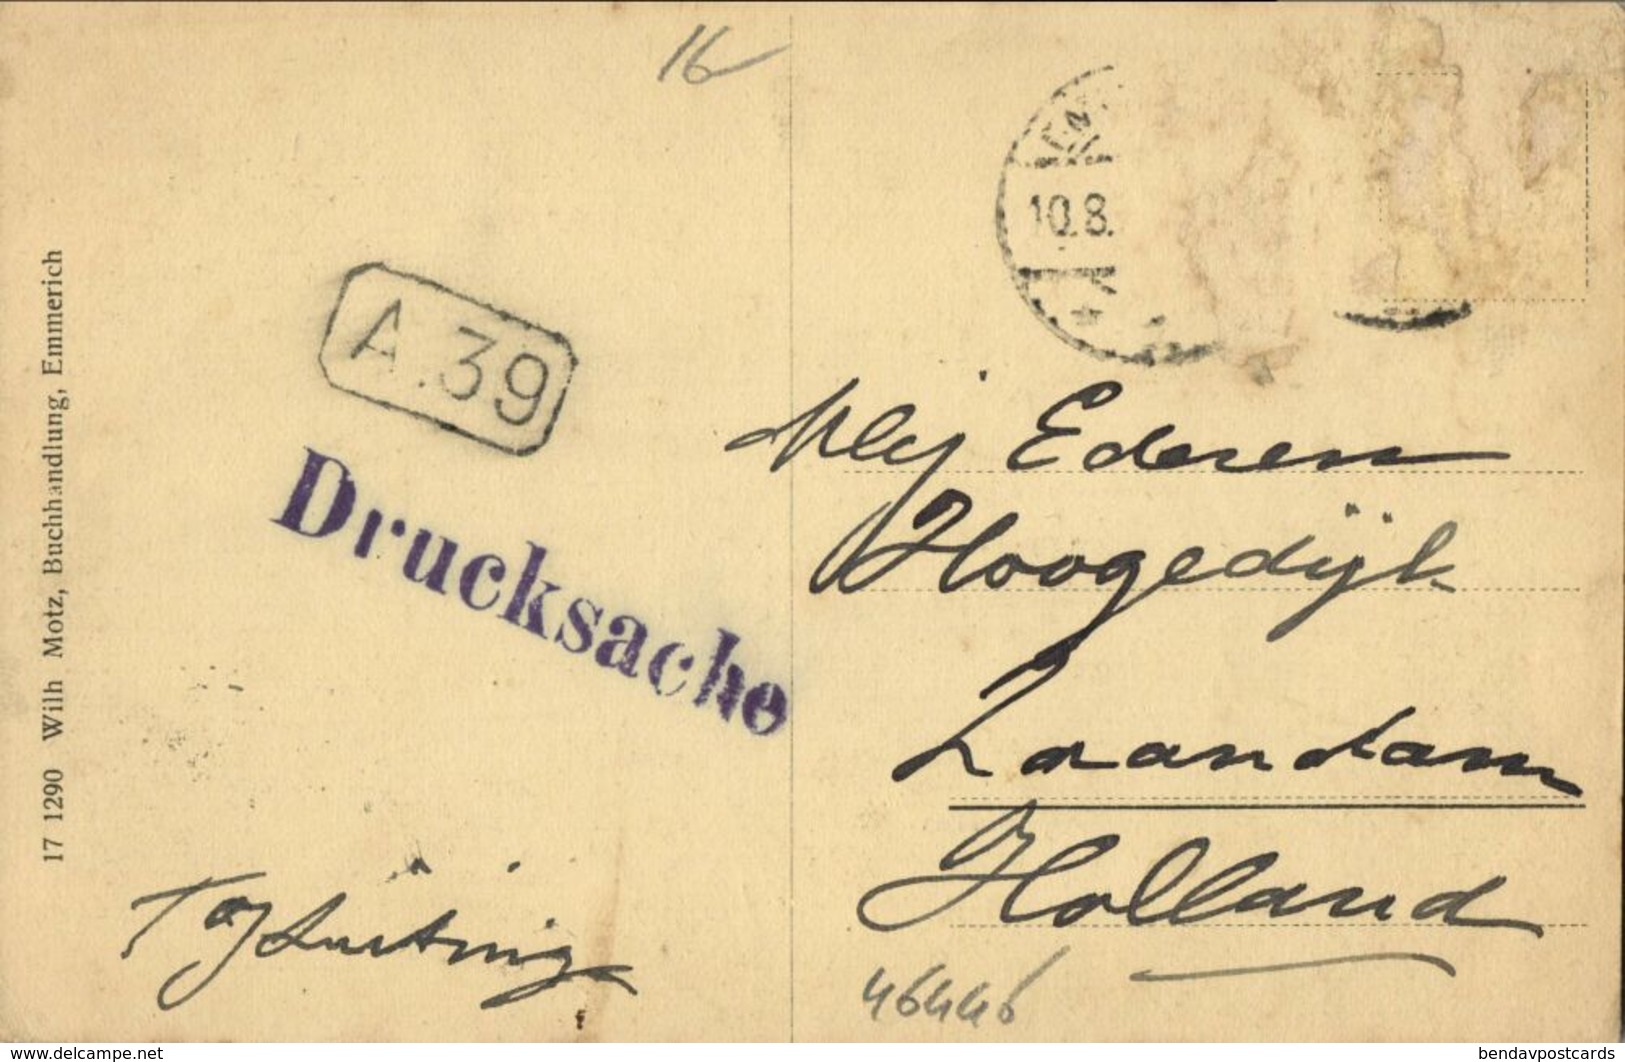 EMMERICH, Kl. Löwe-Kasstrasse (1910s) AK - Emmerich